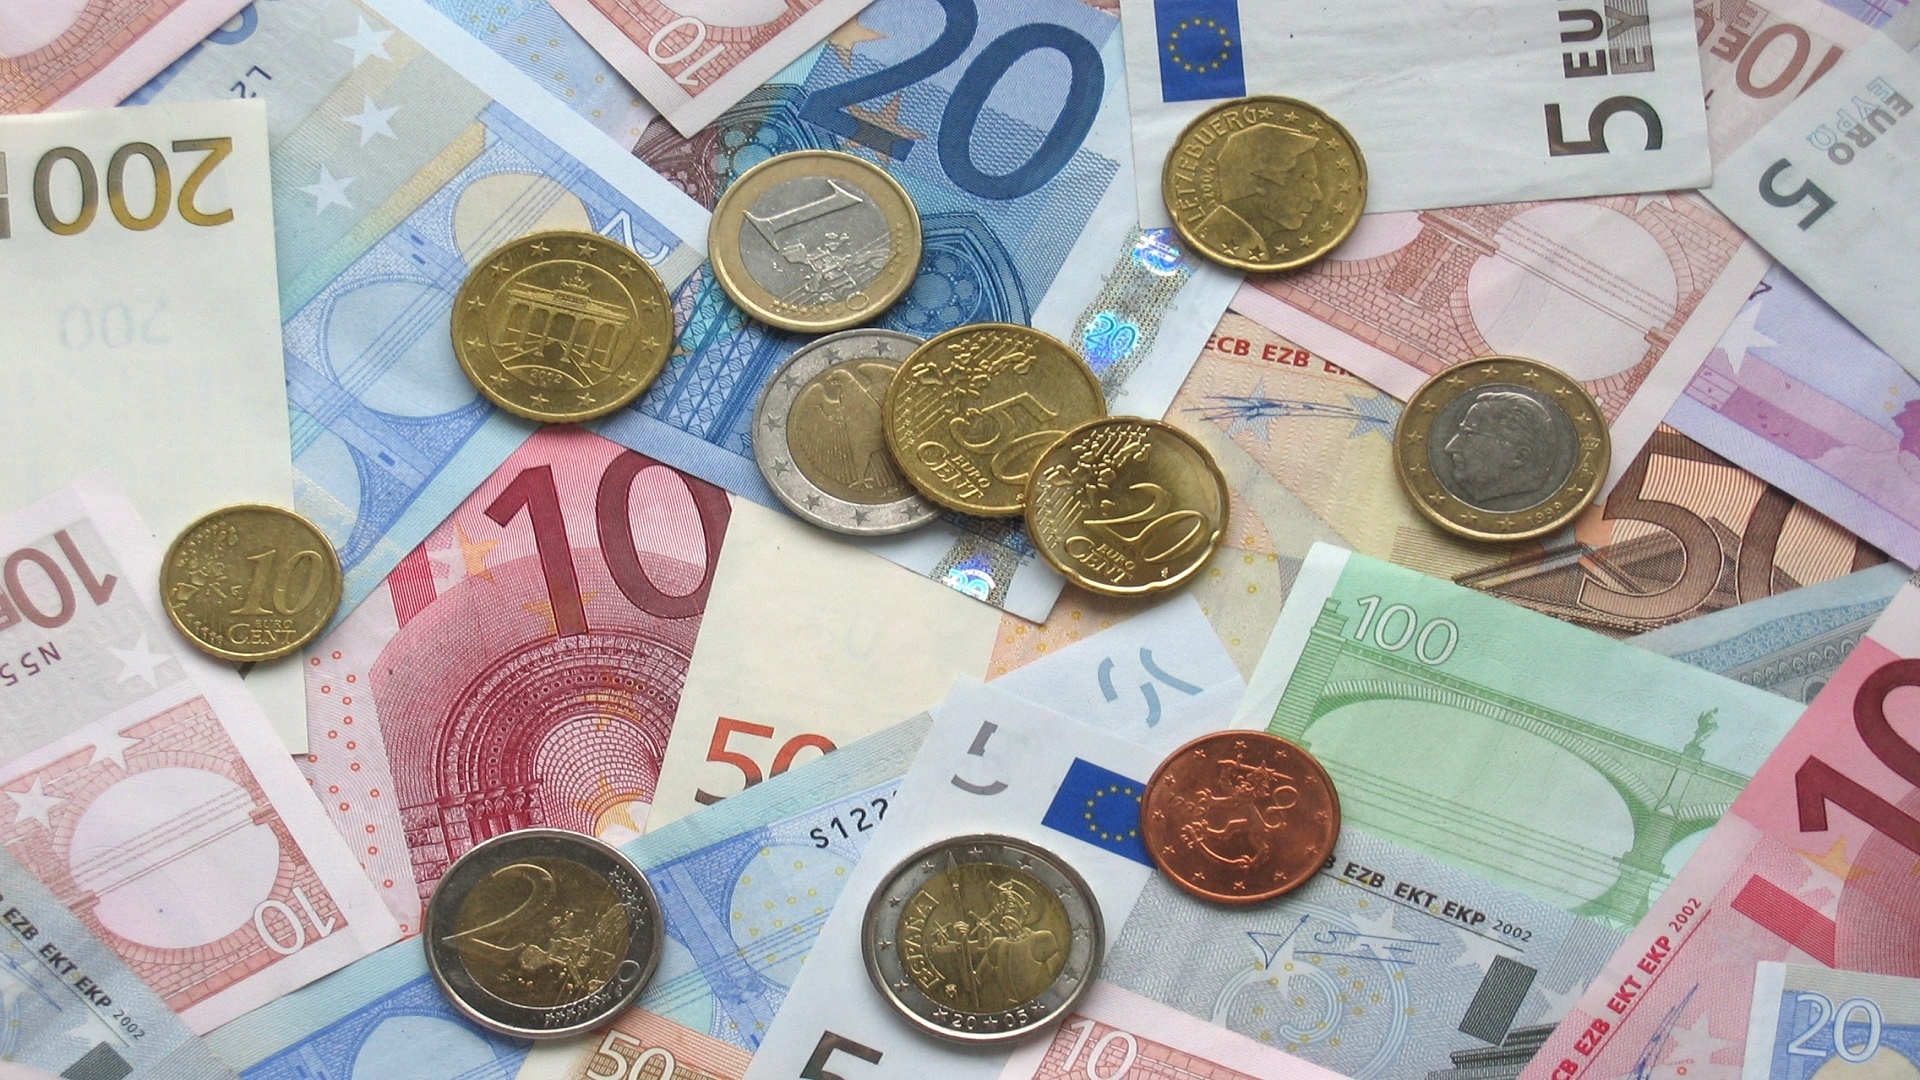 ユーロ紙幣および部品